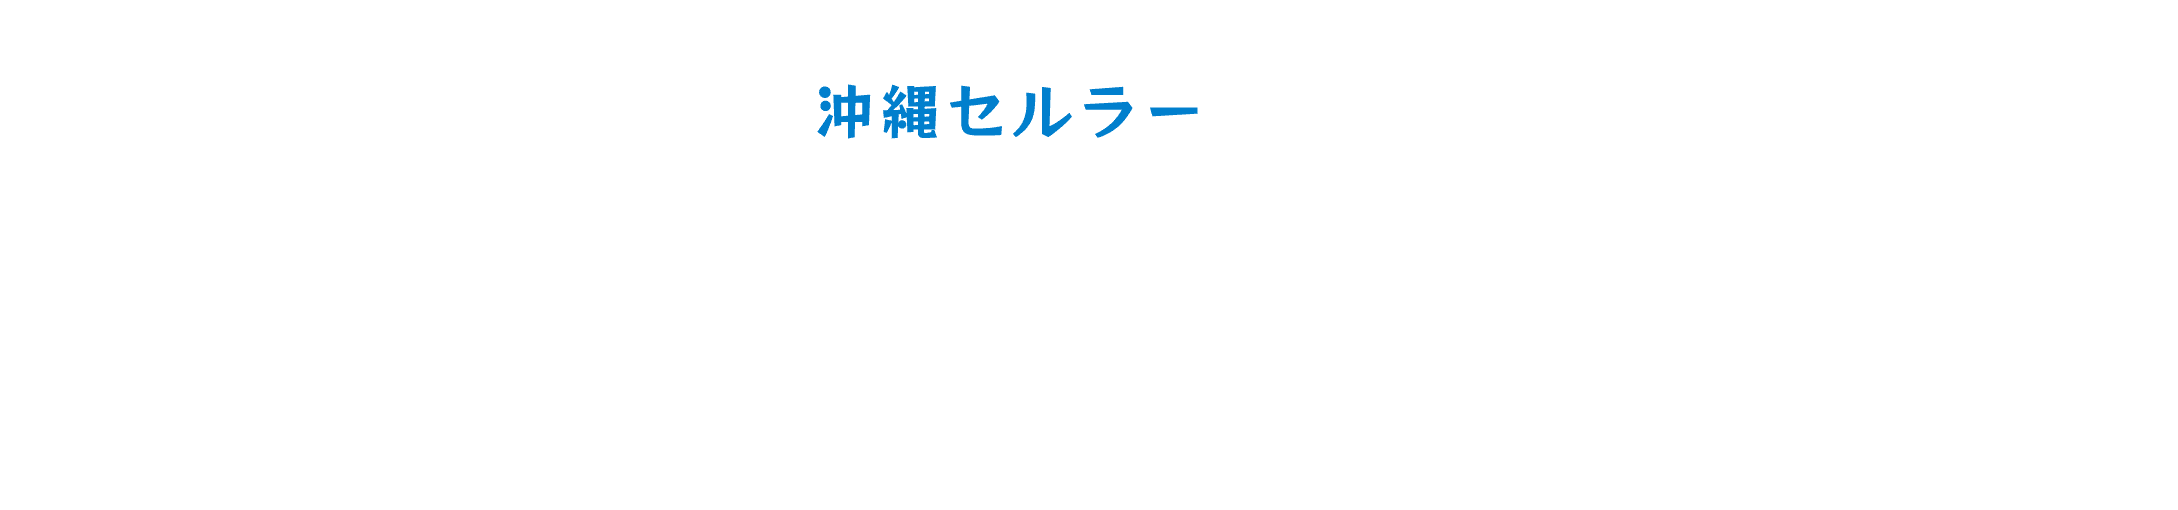 沖縄セルラーおきなわ自然保護プロジェクト